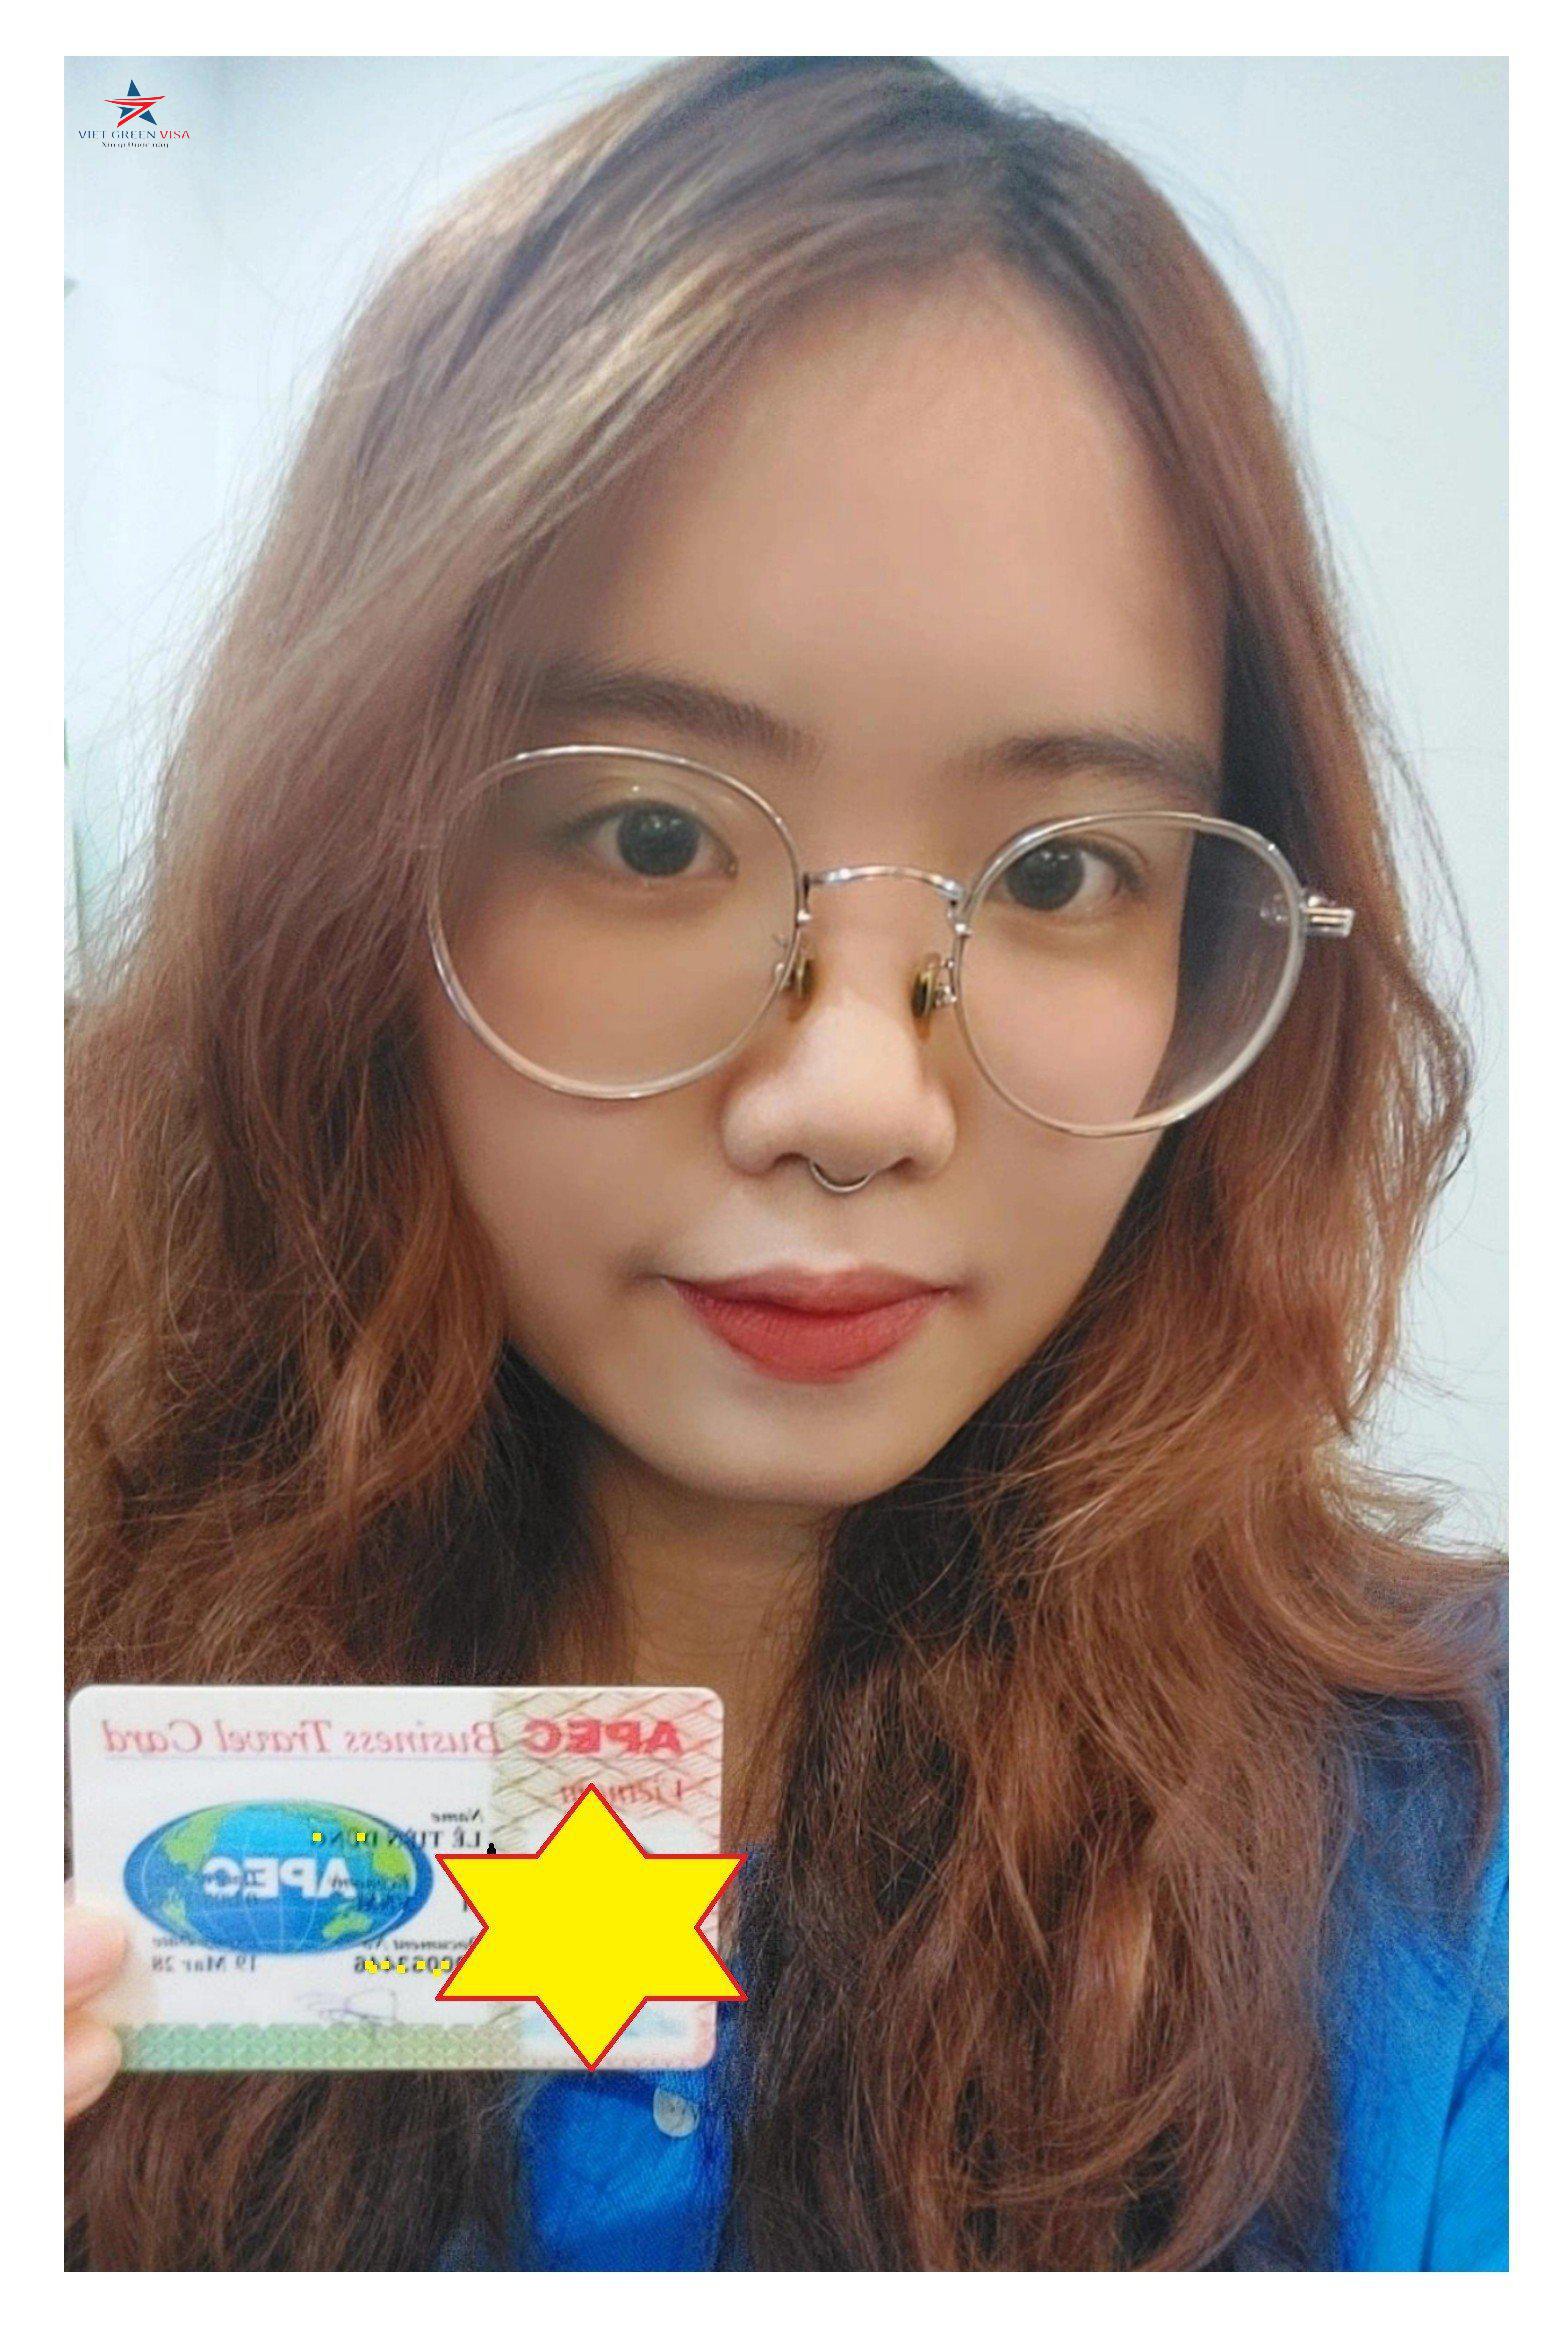 Dịch vụ gia hạn thẻ Apec tại Lâm Đồng uy tín